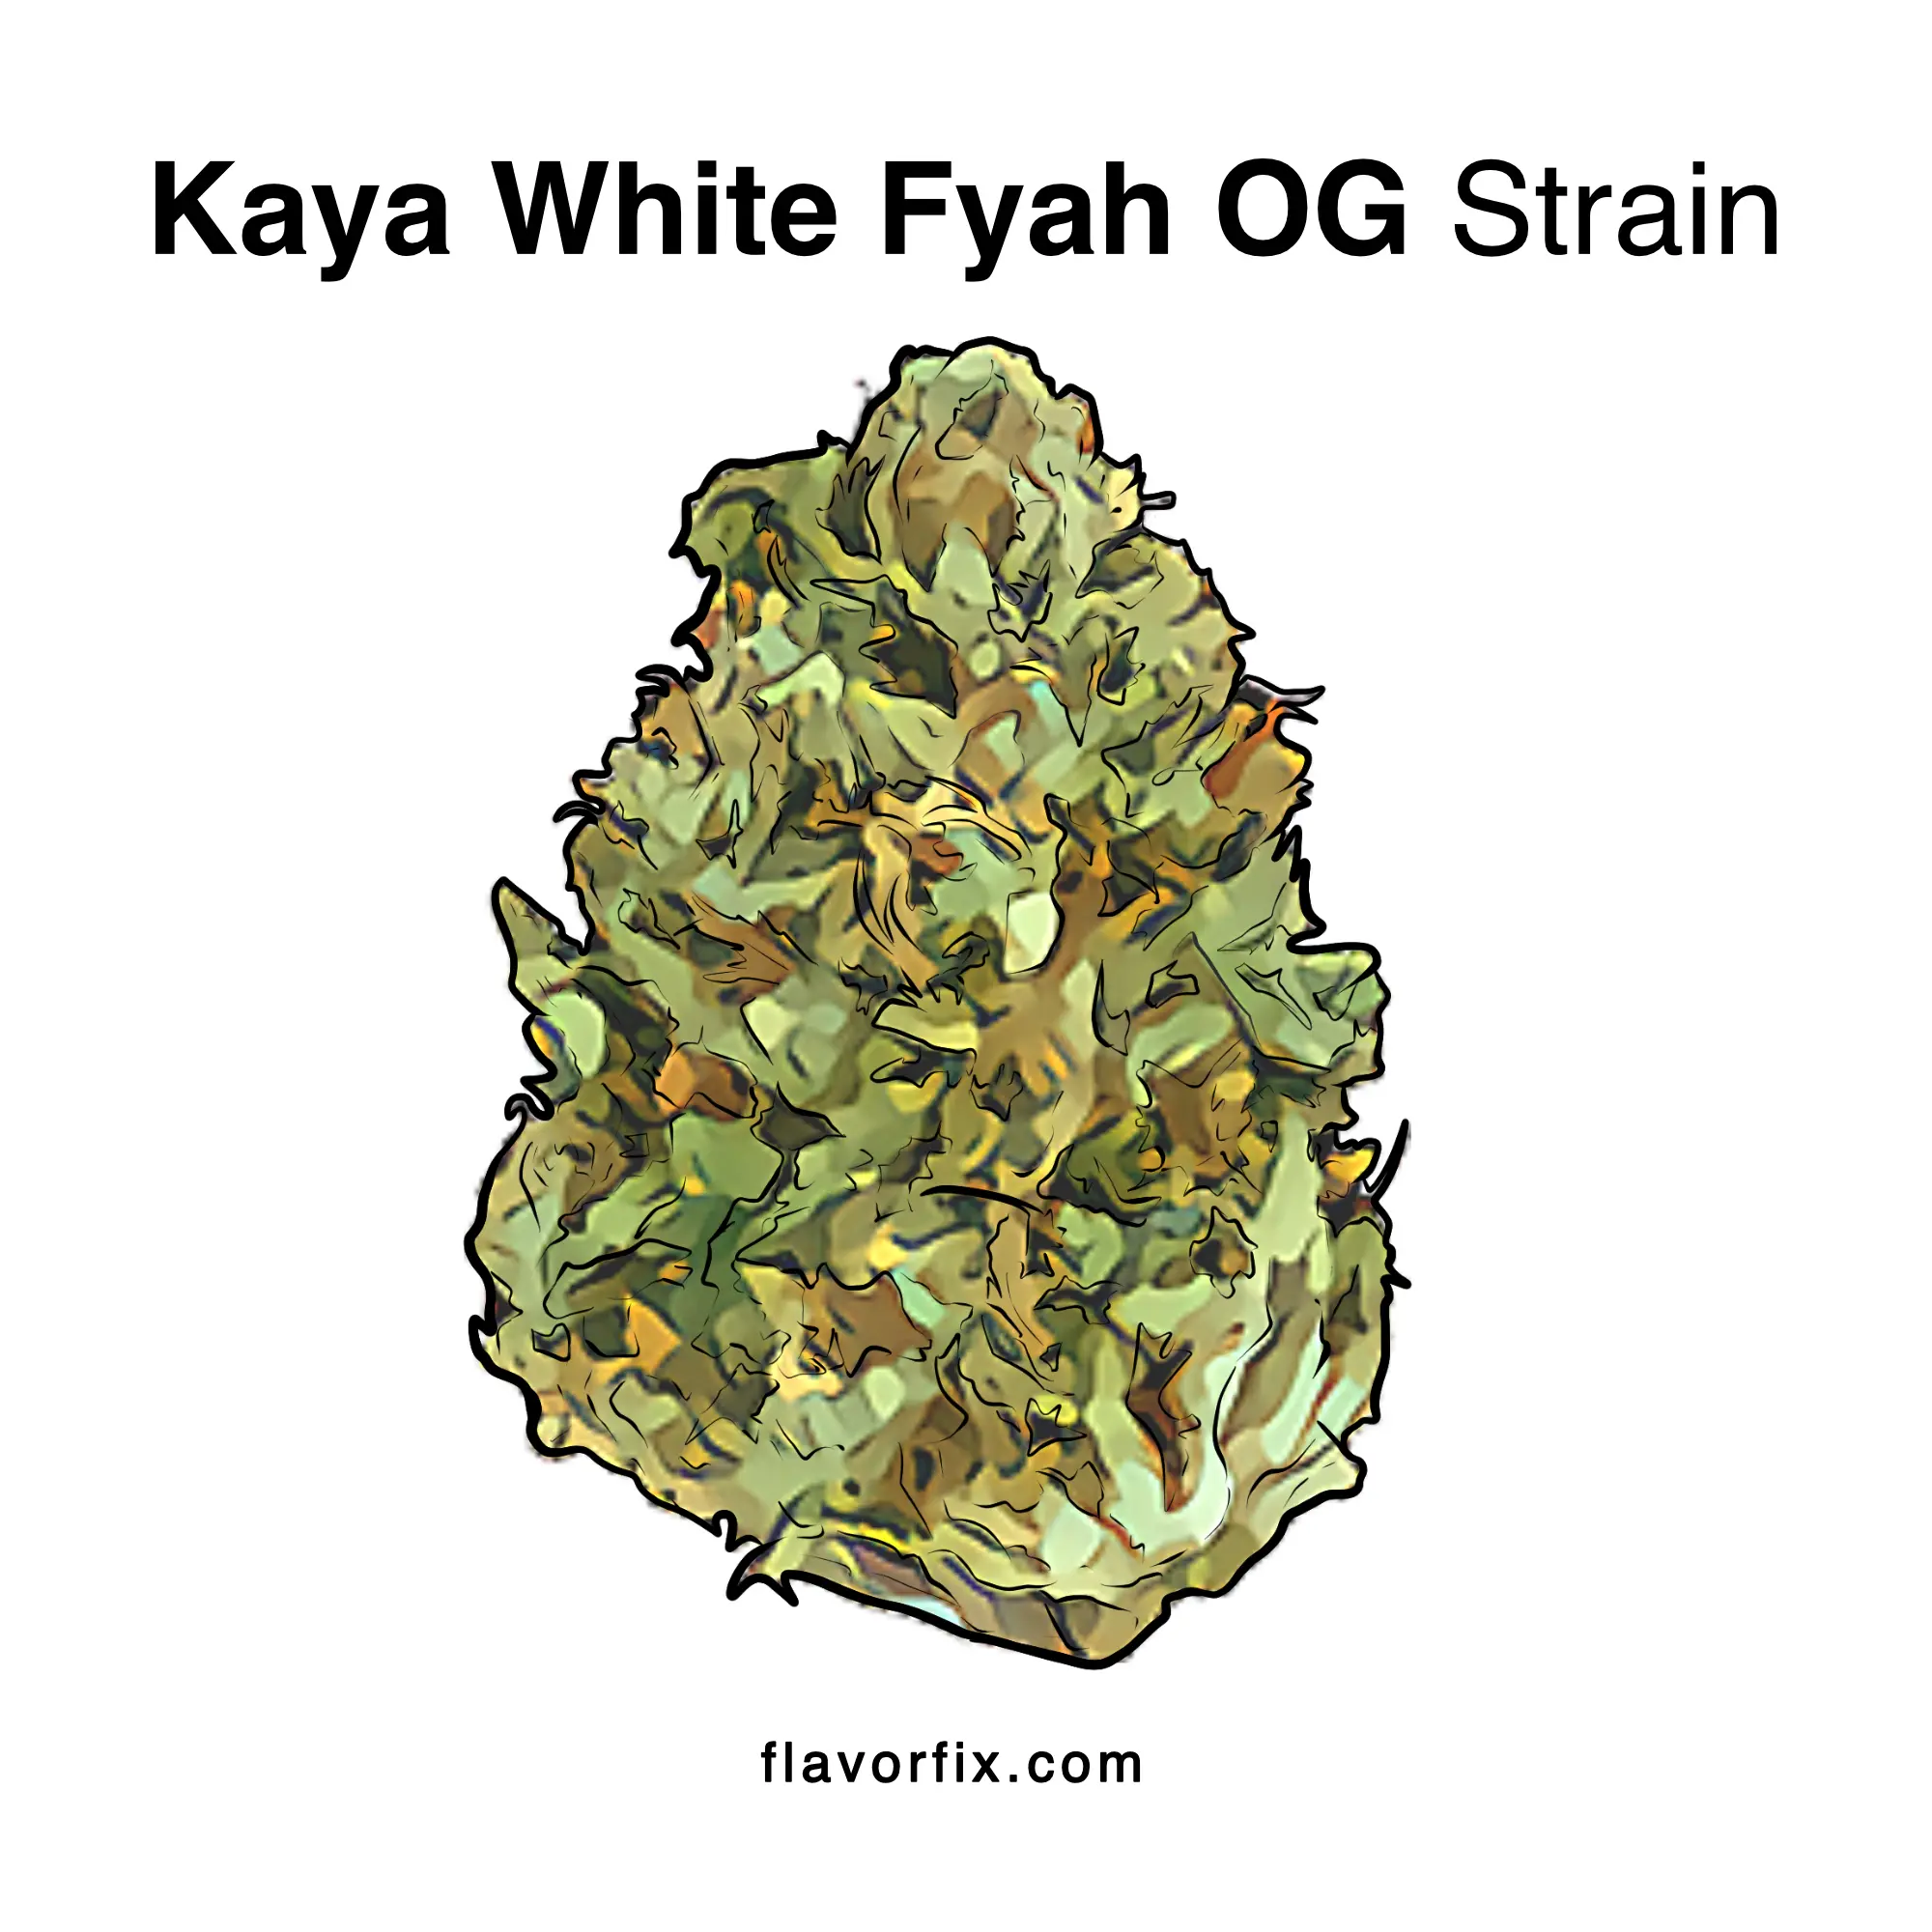 Kaya White Fyah OG Strain